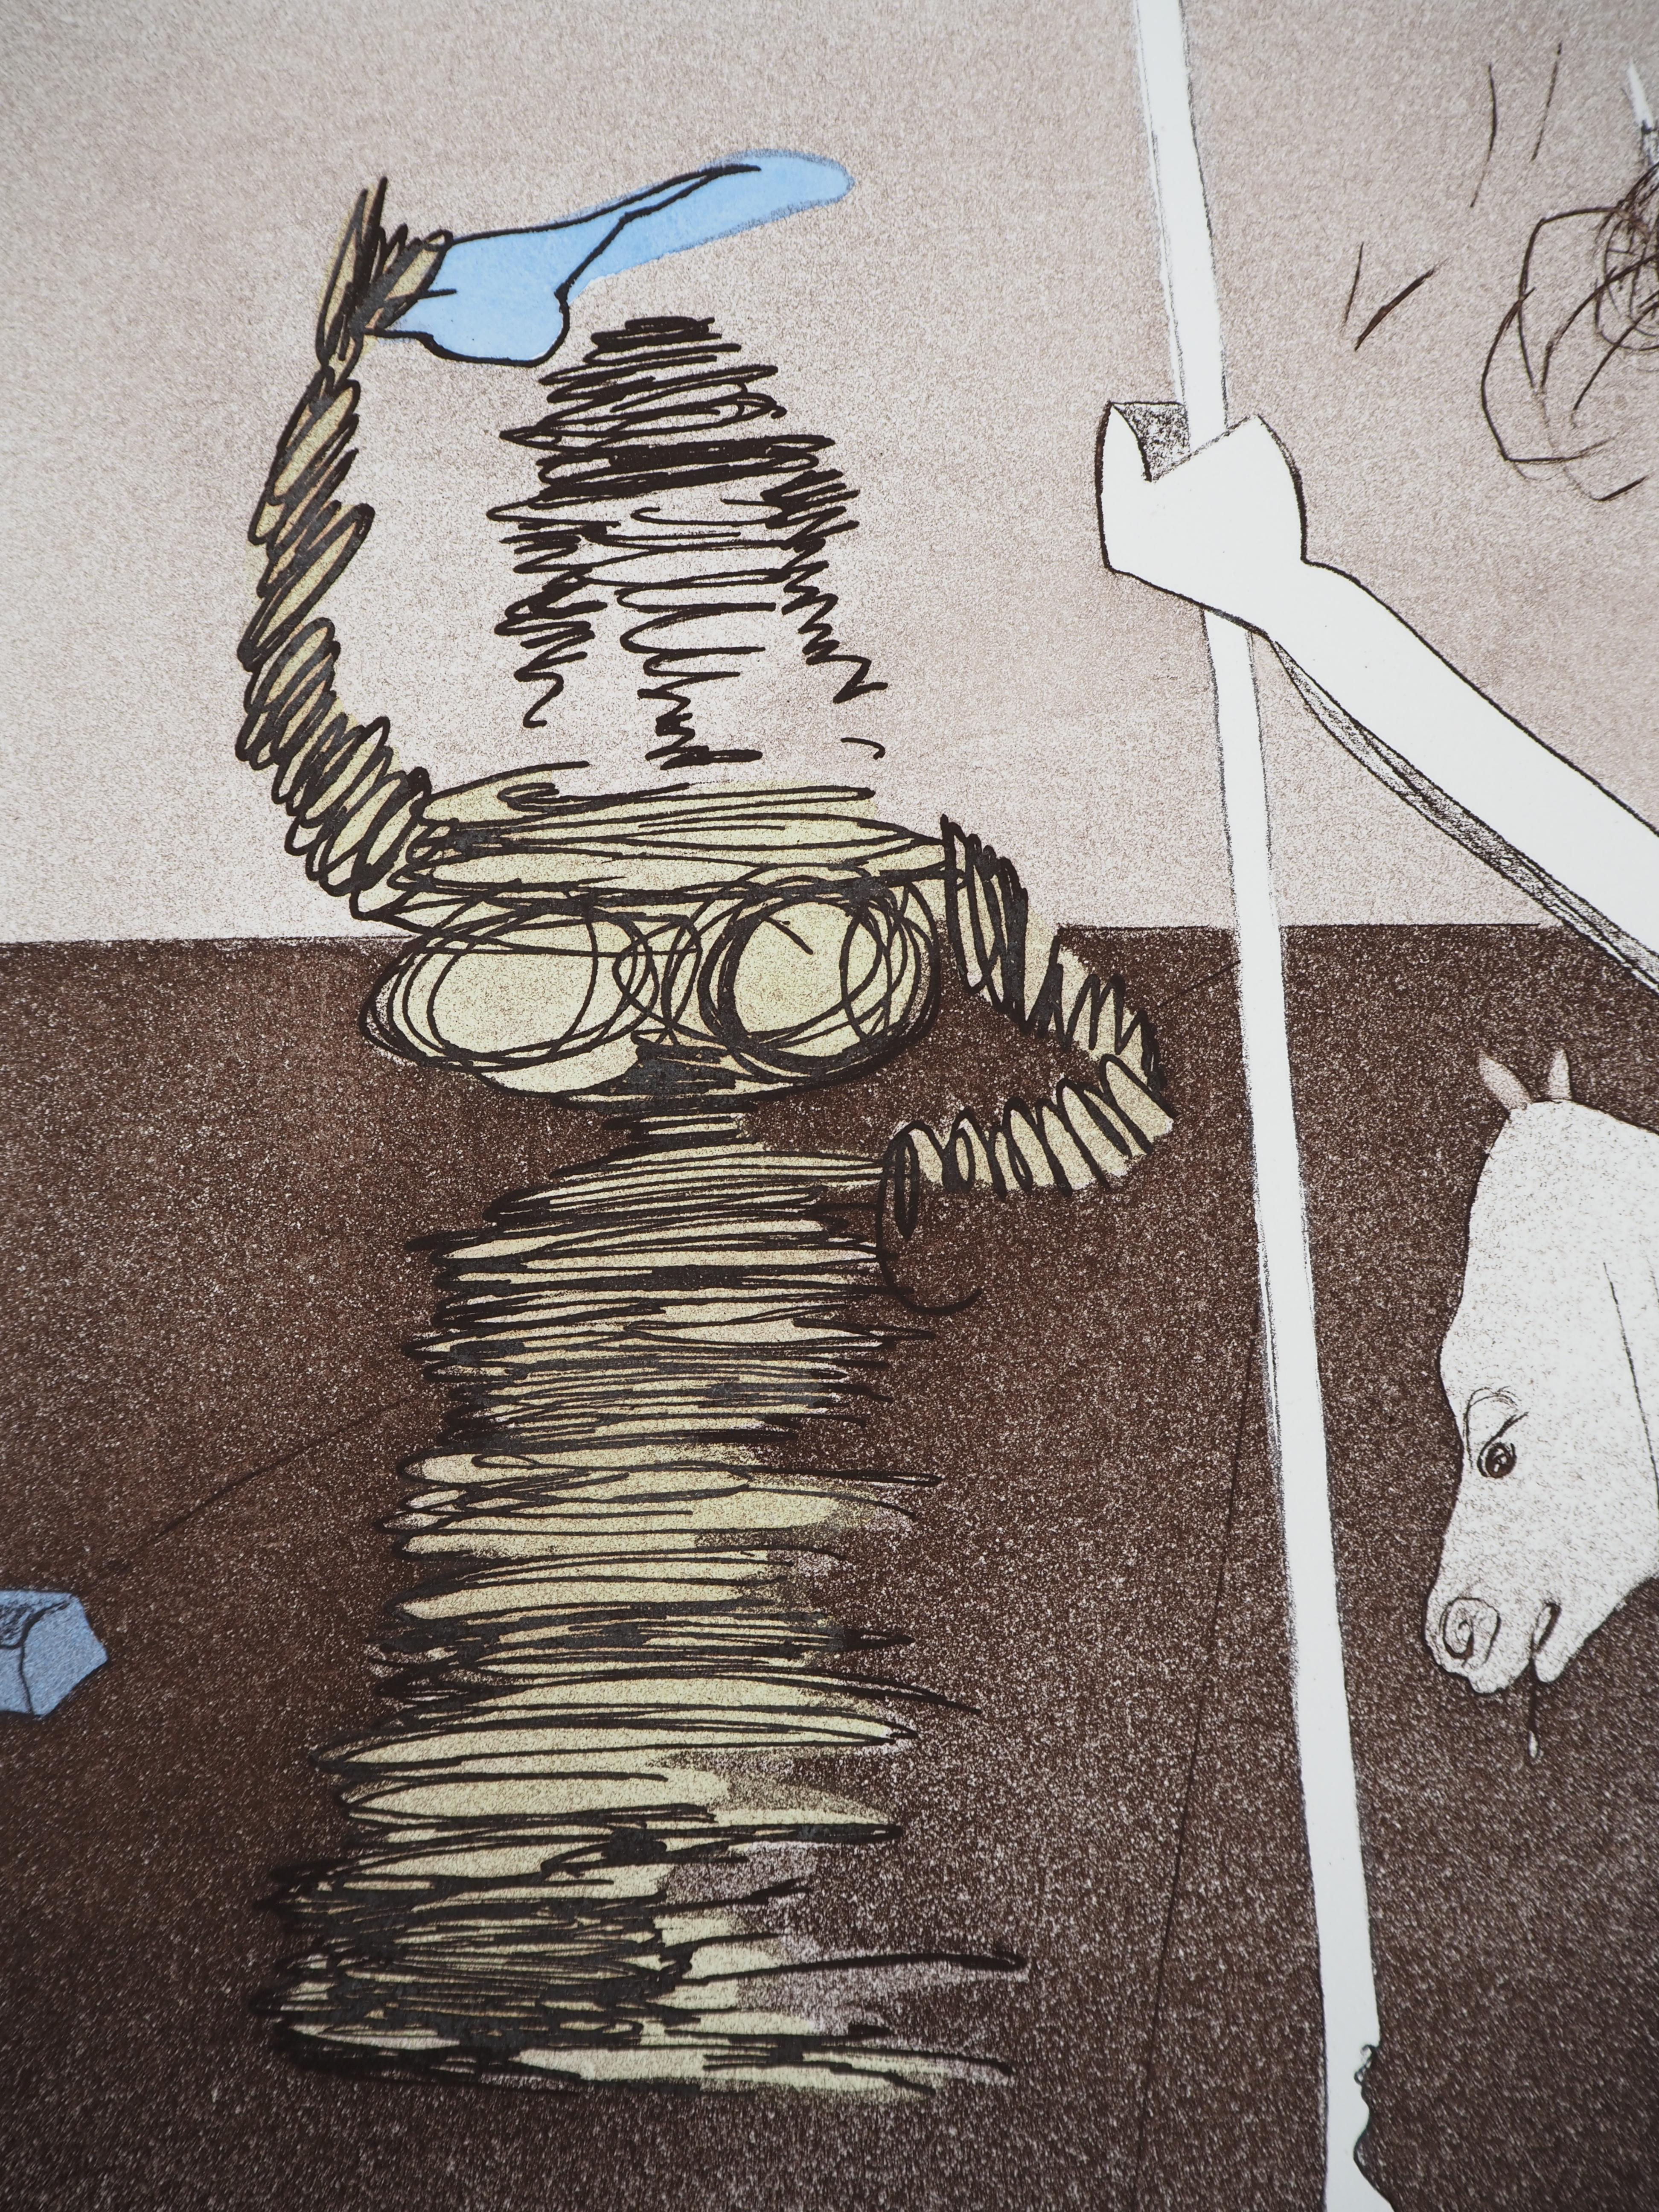 Salvador DALI (1904-1989)
Don Quijote: Auf in die Schlacht, 1980

Original Radierung mit Aquatinta
Mit Bleistift signiert
Nummeriert / 125
Auf Arches Vellum 76 x 56,5 cm (ca. 30 x 22 Zoll)
Authentifiziert mit dem Blindstempel des Herausgebers